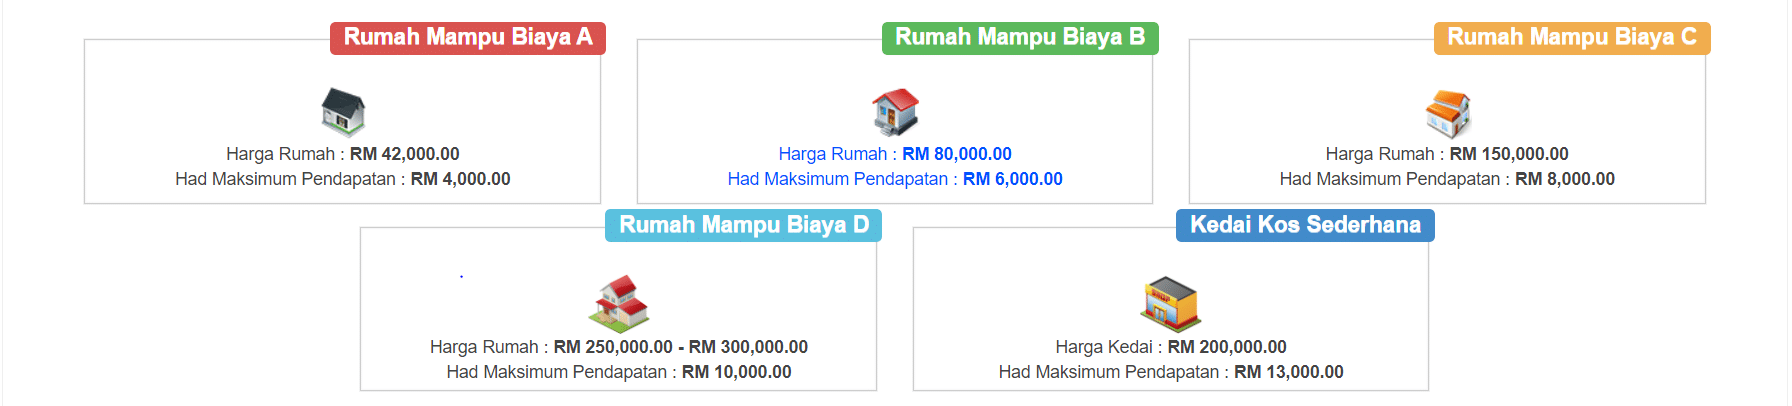 Rumah Mampu Milik Johor：柔佛人的经济适用房 2